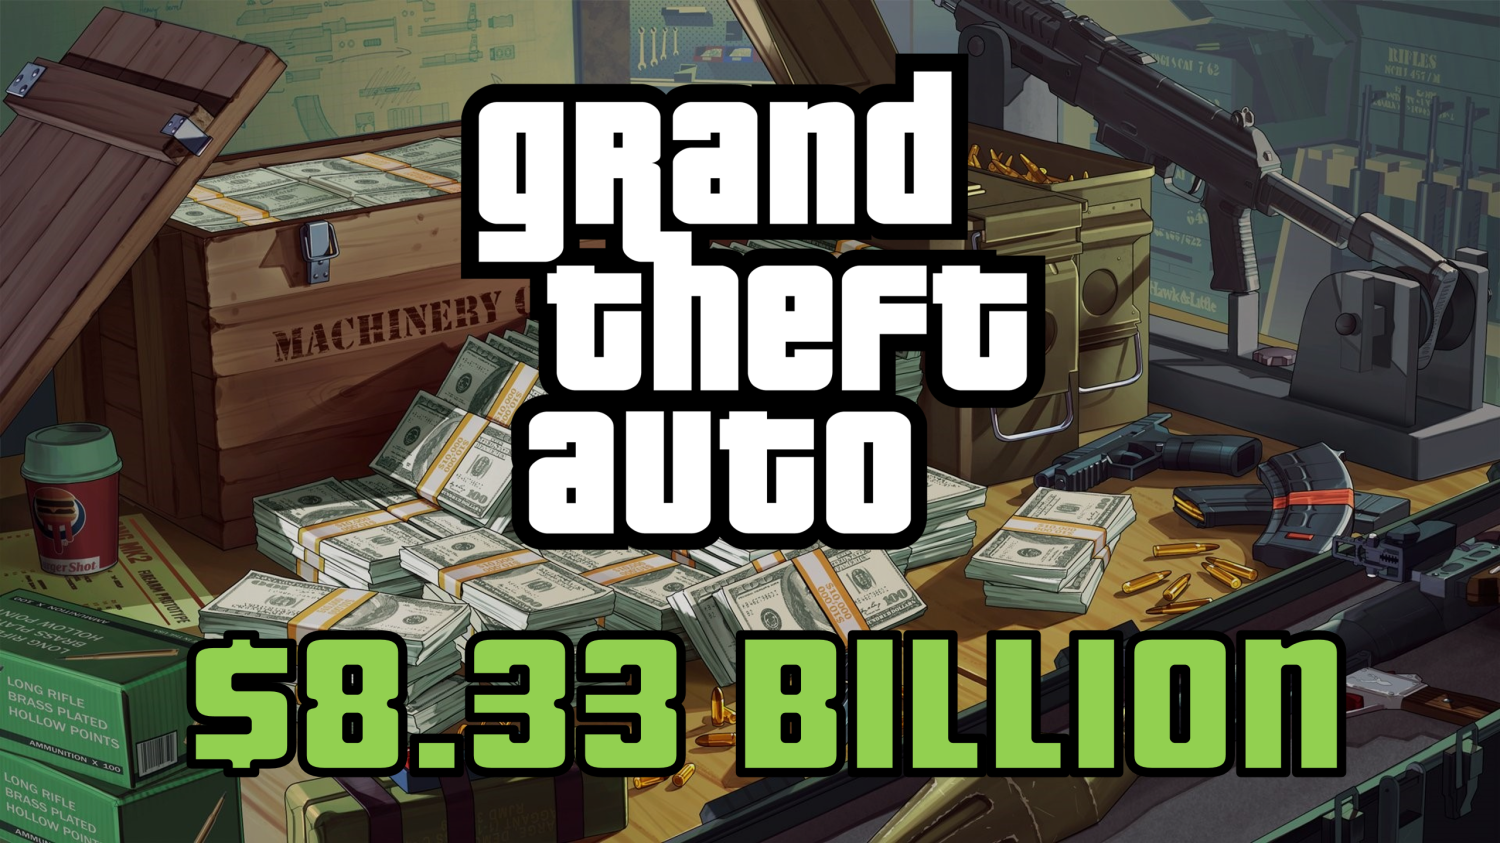 Przychody franczyzy Grand Theft Auto przekraczają 8,33 miliarda dolarów od czasu premiery GTA V